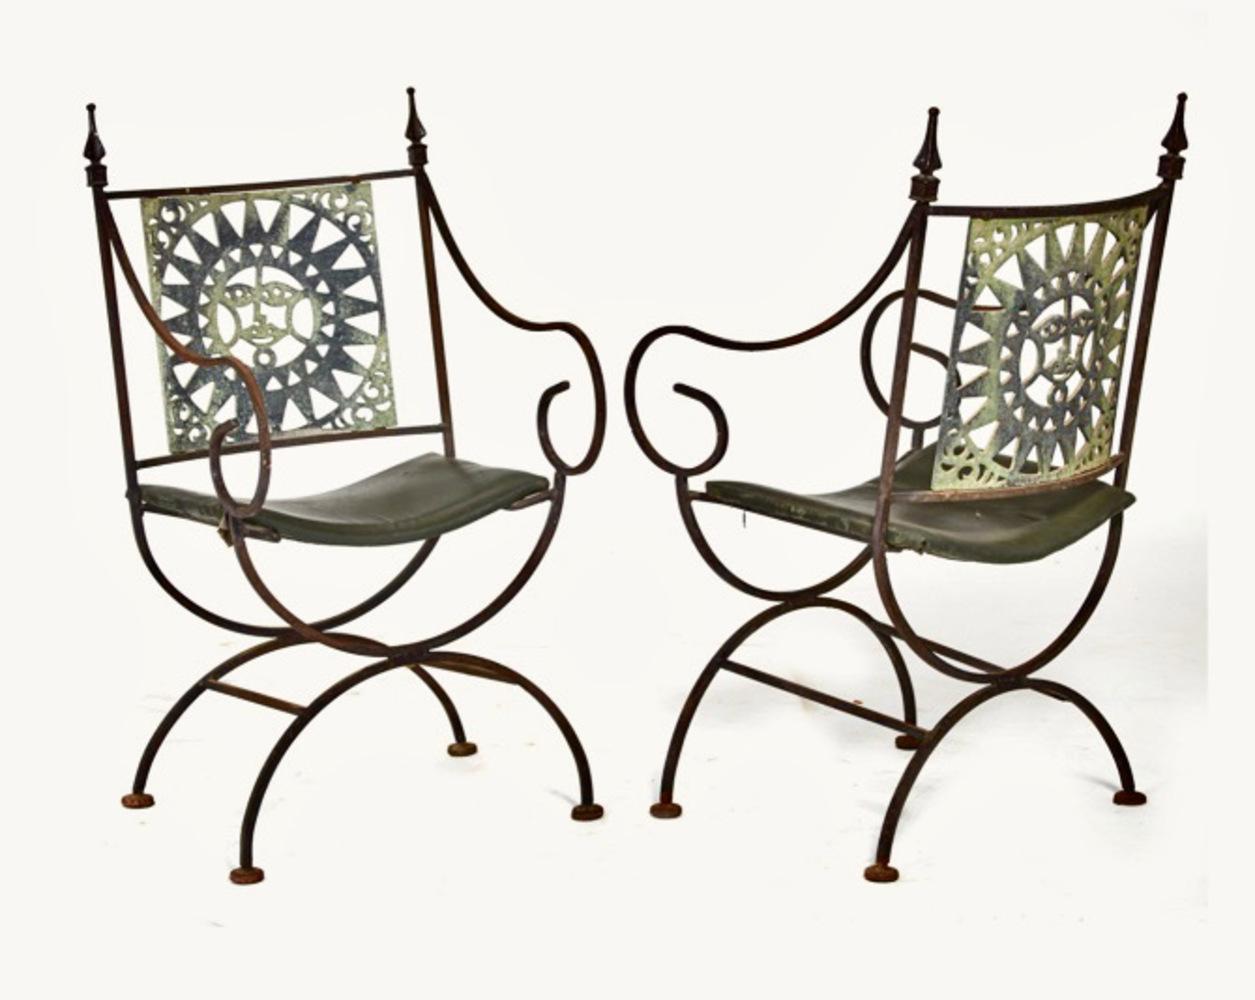 Il s'agit d'un ensemble fantaisiste de quatre fauteuils en fer forgé et en fonte inspirés de Savonarola, datant du milieu du siècle dernier. Nous attribuons ces chaises à une origine mexicaine du milieu du siècle. Ce sont les chaises de patio